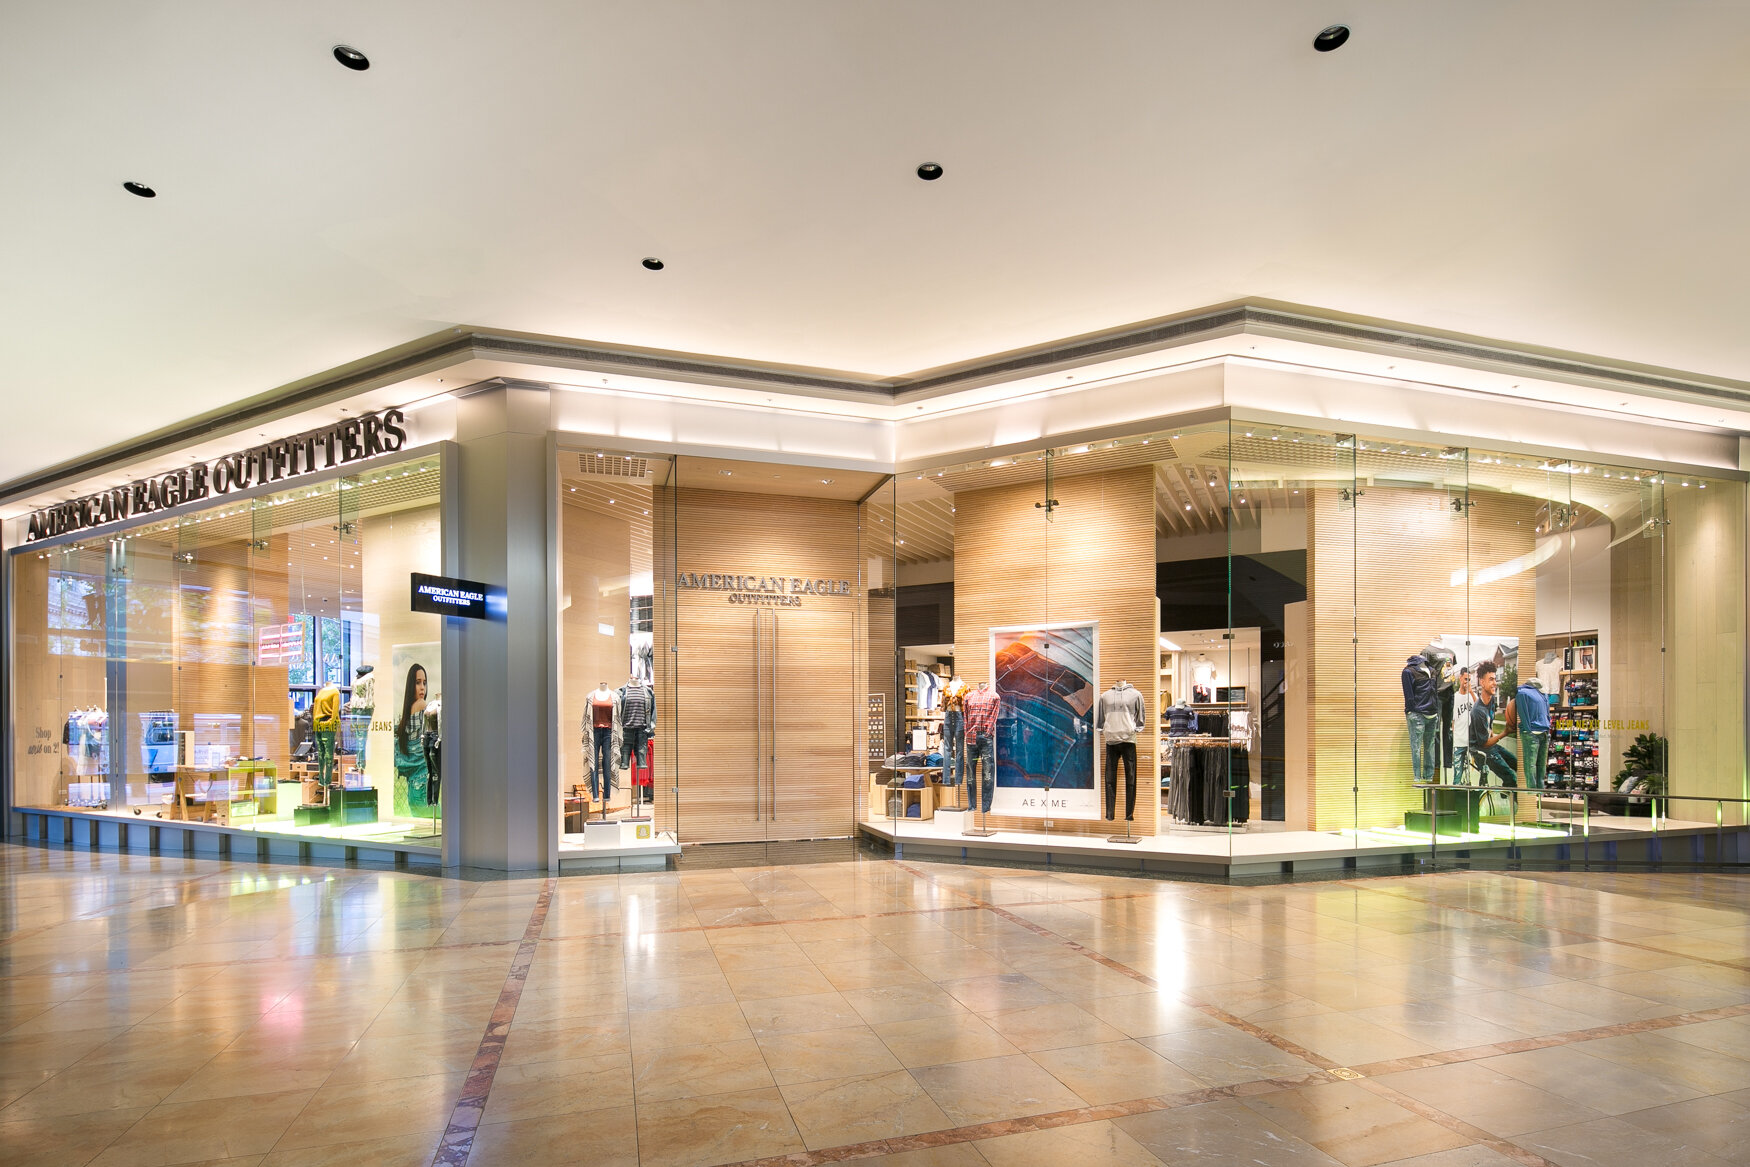 Pandora retail interiors by brightroomSF Interior photograohy-1.jpg